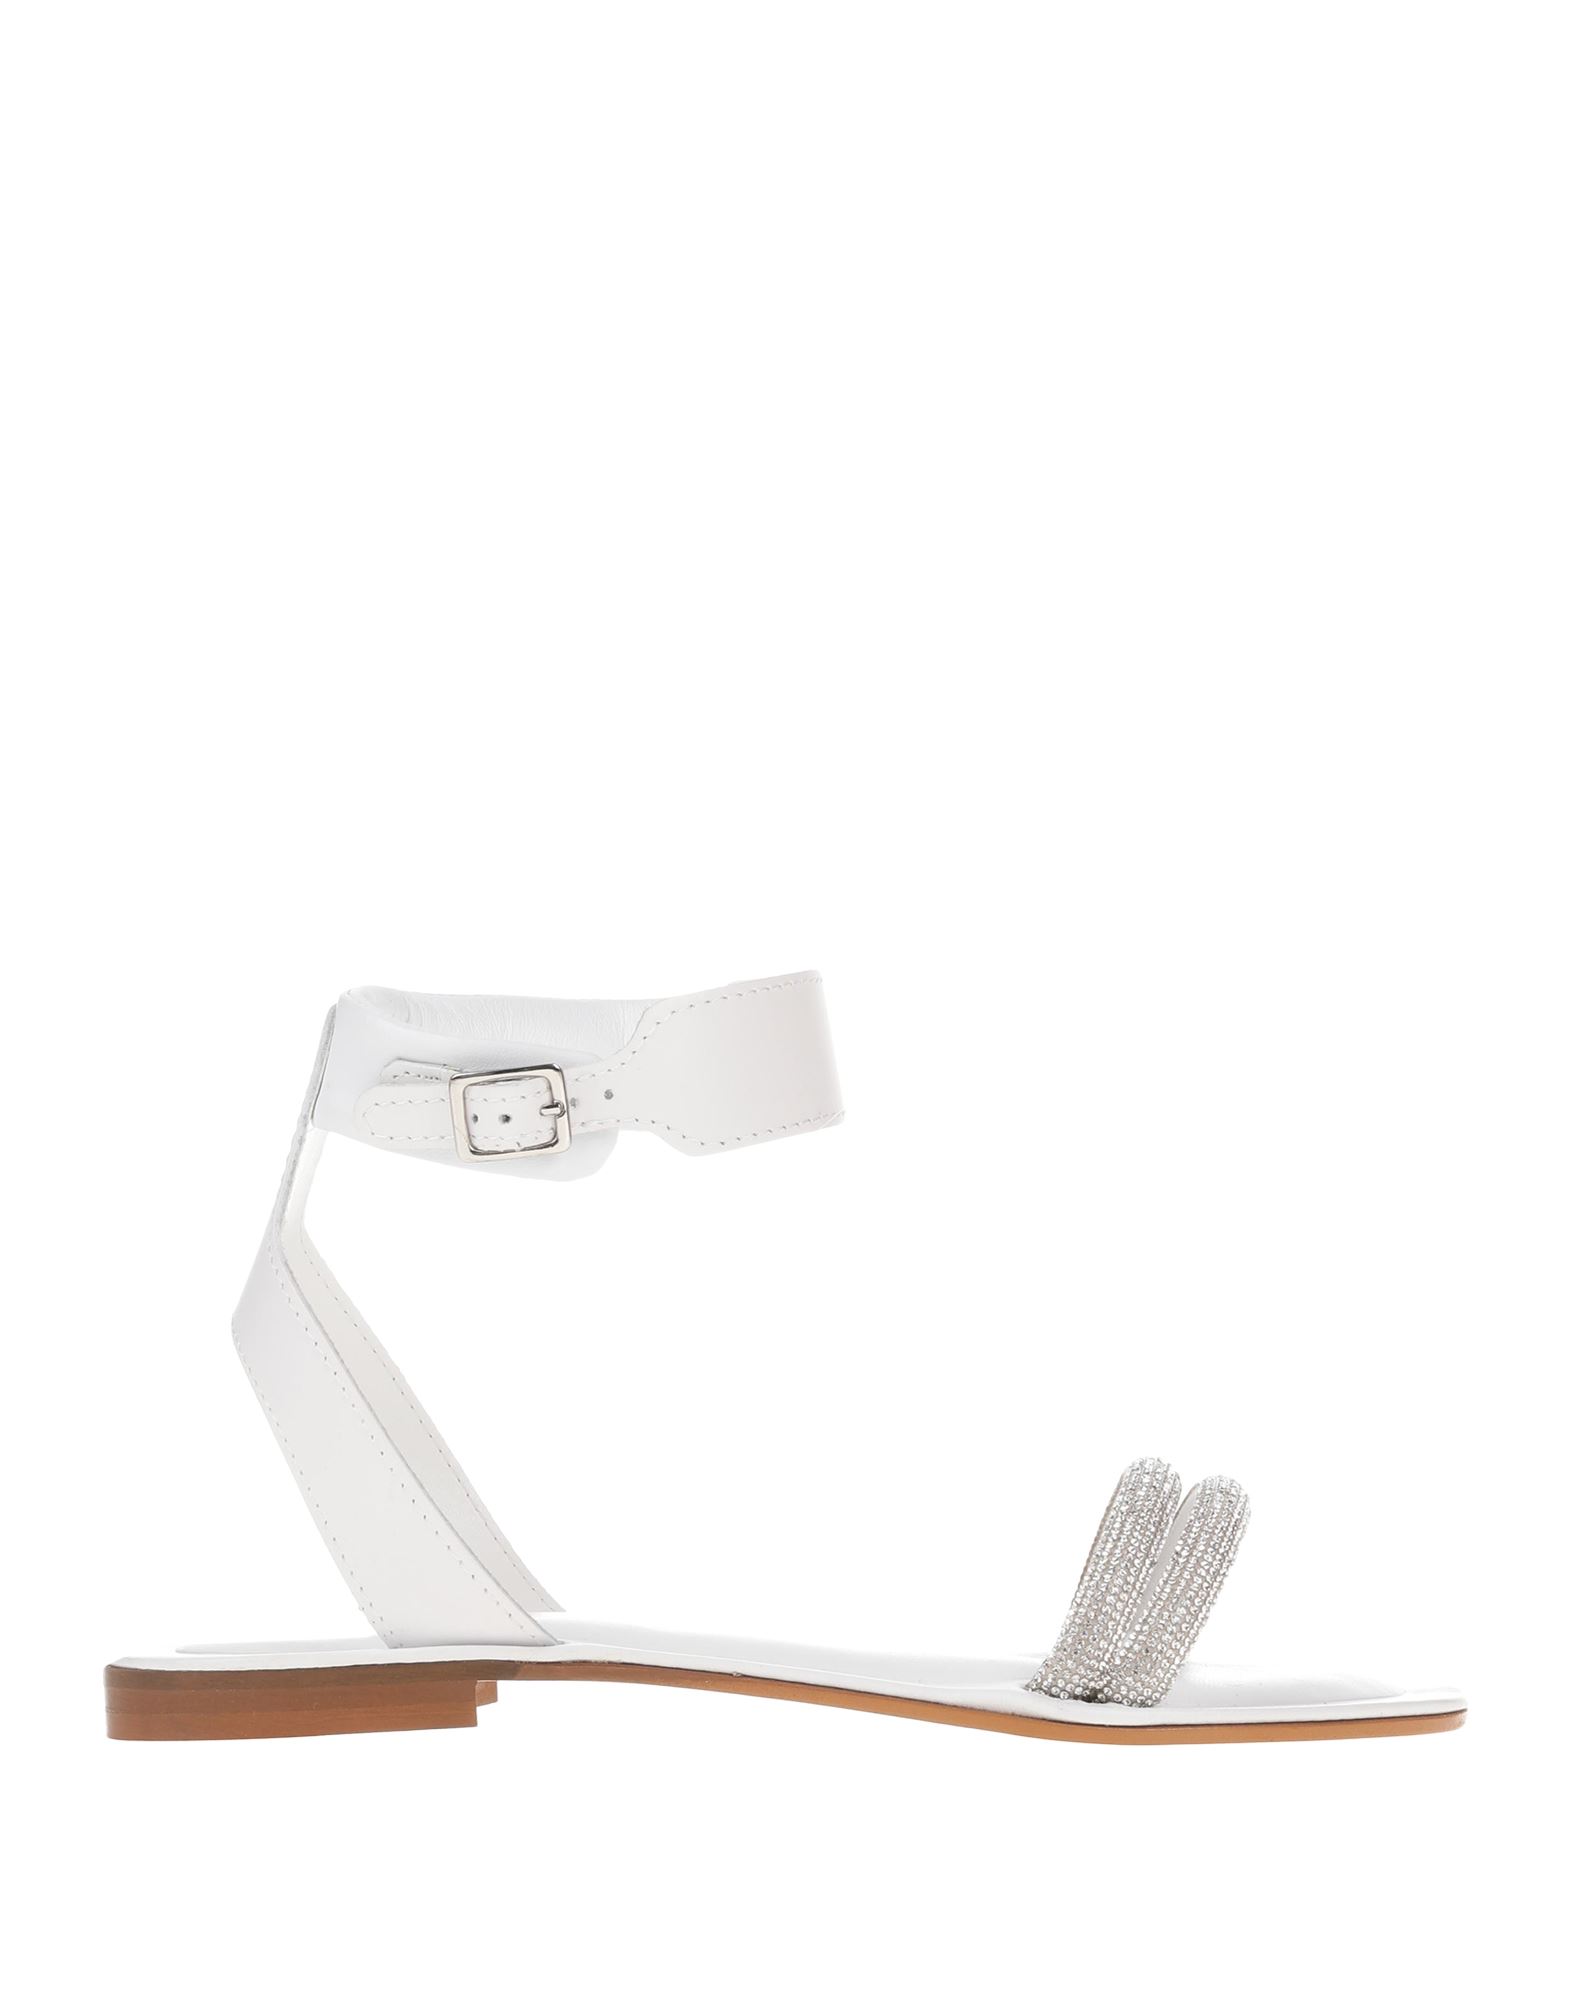 Cécile Woman Sandals White Size 7 Leather